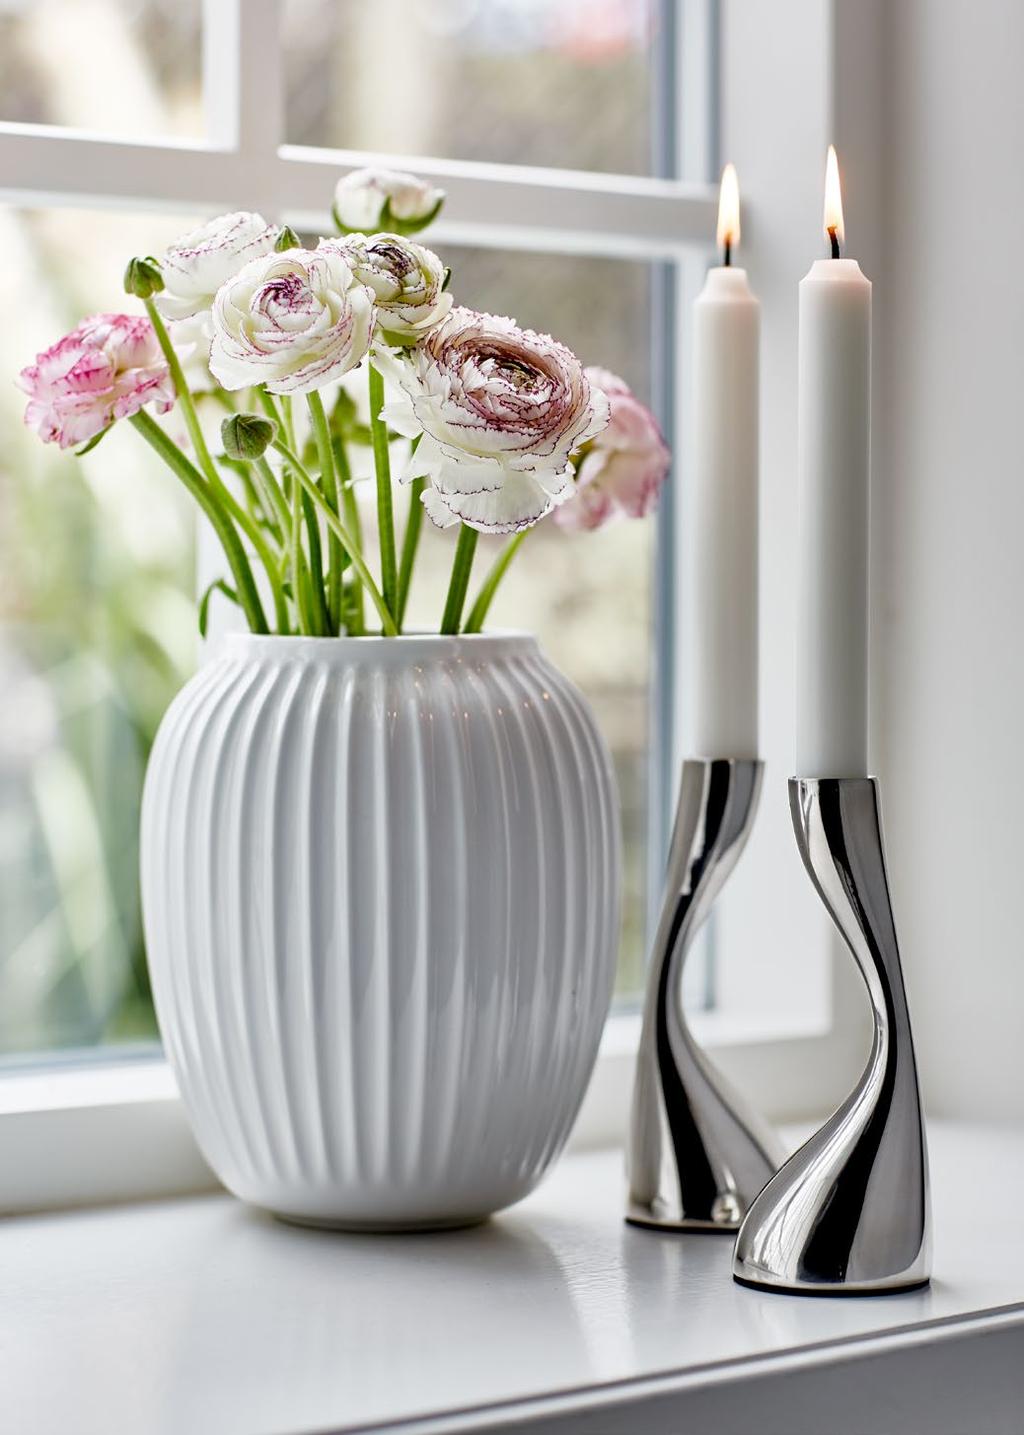 Direkte inspireret af Svend Hammershøis gamle værker, som han skabte på Kählers værksted i 1900-tallet. Vaserne fremhæver på smukkeste vis årstidens friske blomster og grene.